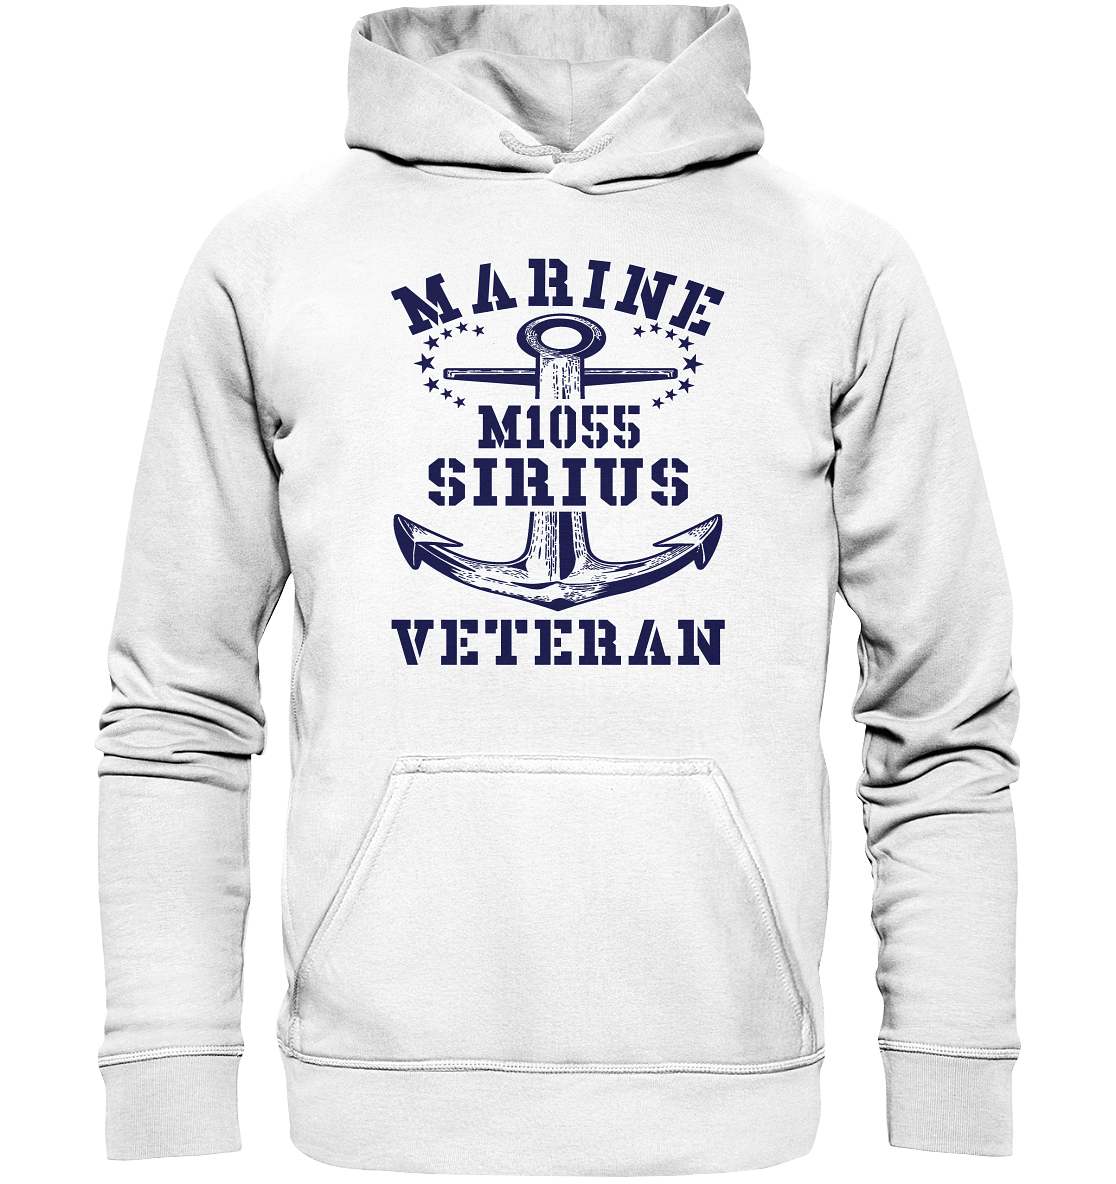 SM-Boot M1055 SIRIUS Marine Veteran - Basic Unisex Hoodie